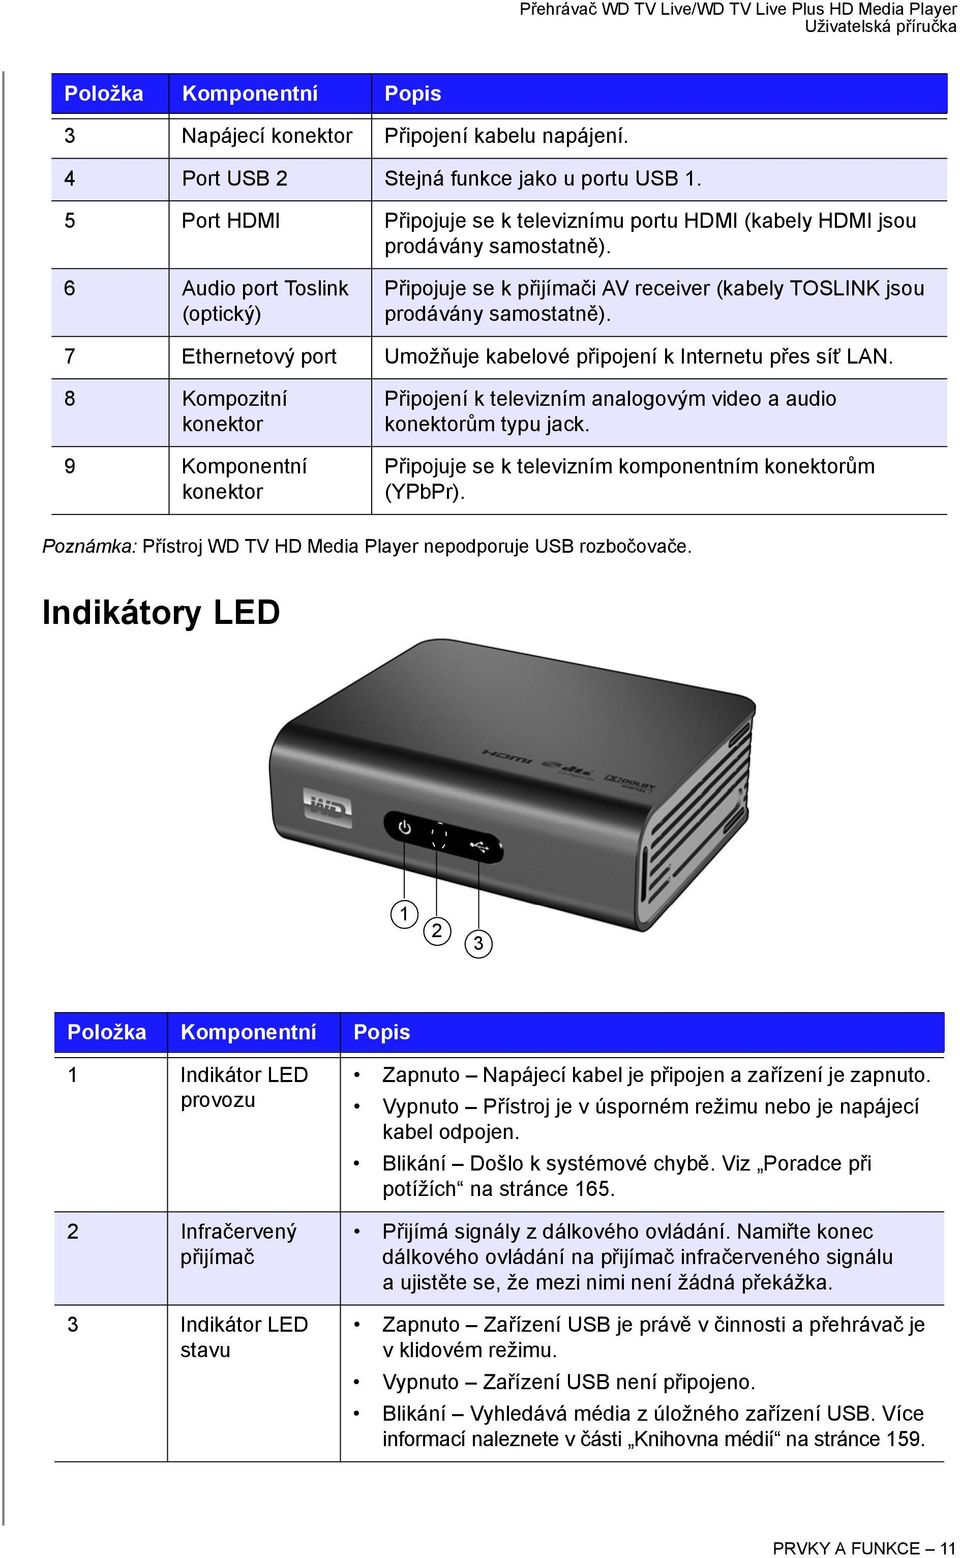 6 Audio port Toslink (optický) Připojuje se k přijímači AV receiver (kabely TOSLINK jsou prodávány samostatně). 7 Ethernetový port Umožňuje kabelové připojení k Internetu přes síť LAN.